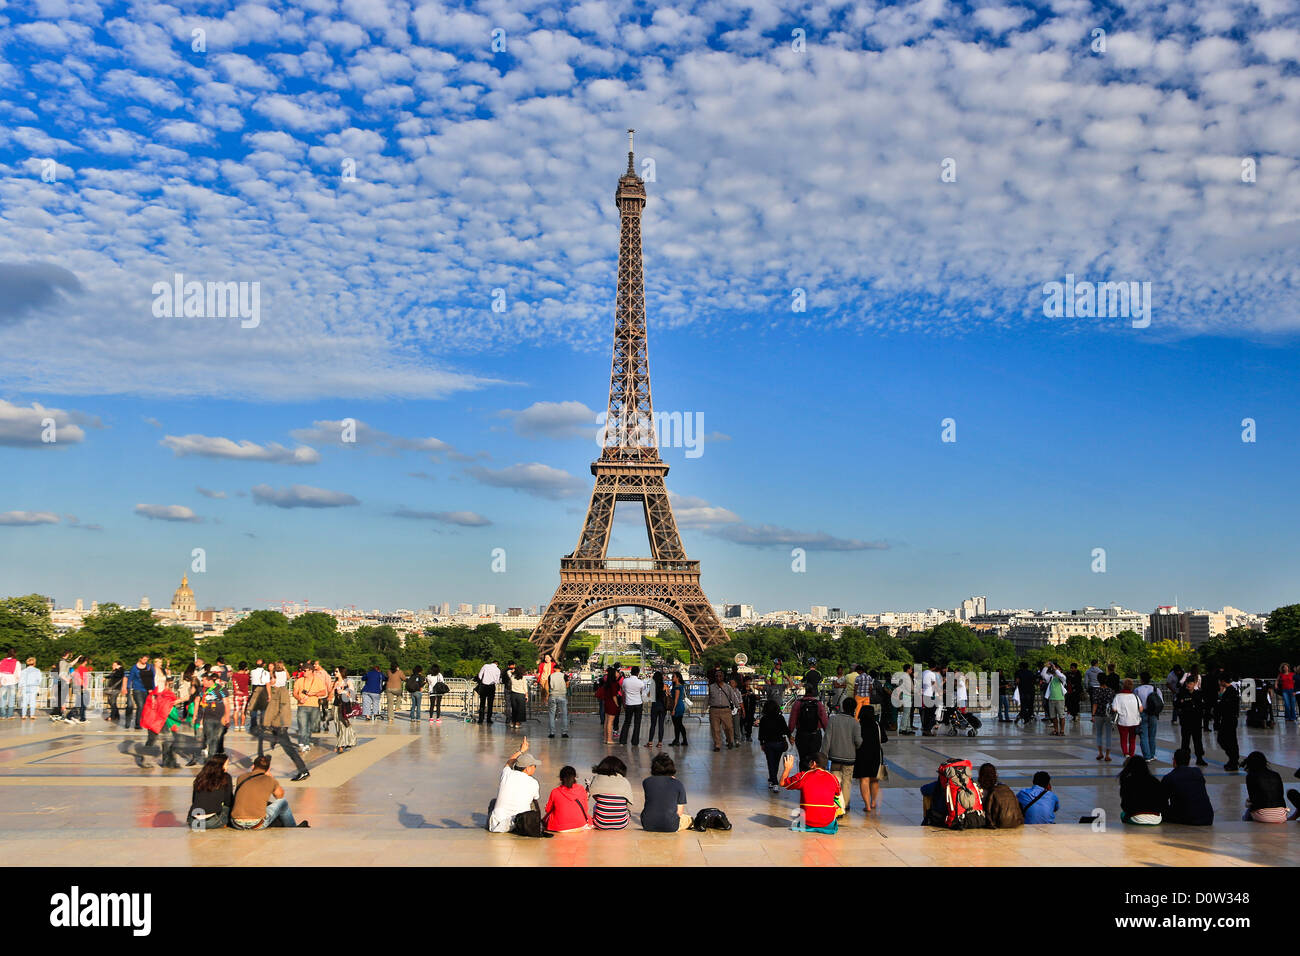 Francia Europa viaggi città di Parigi Torre Eiffel Trocadero architettura arte monumentale Eiffel terrazza sullo skyline di turisti Foto Stock